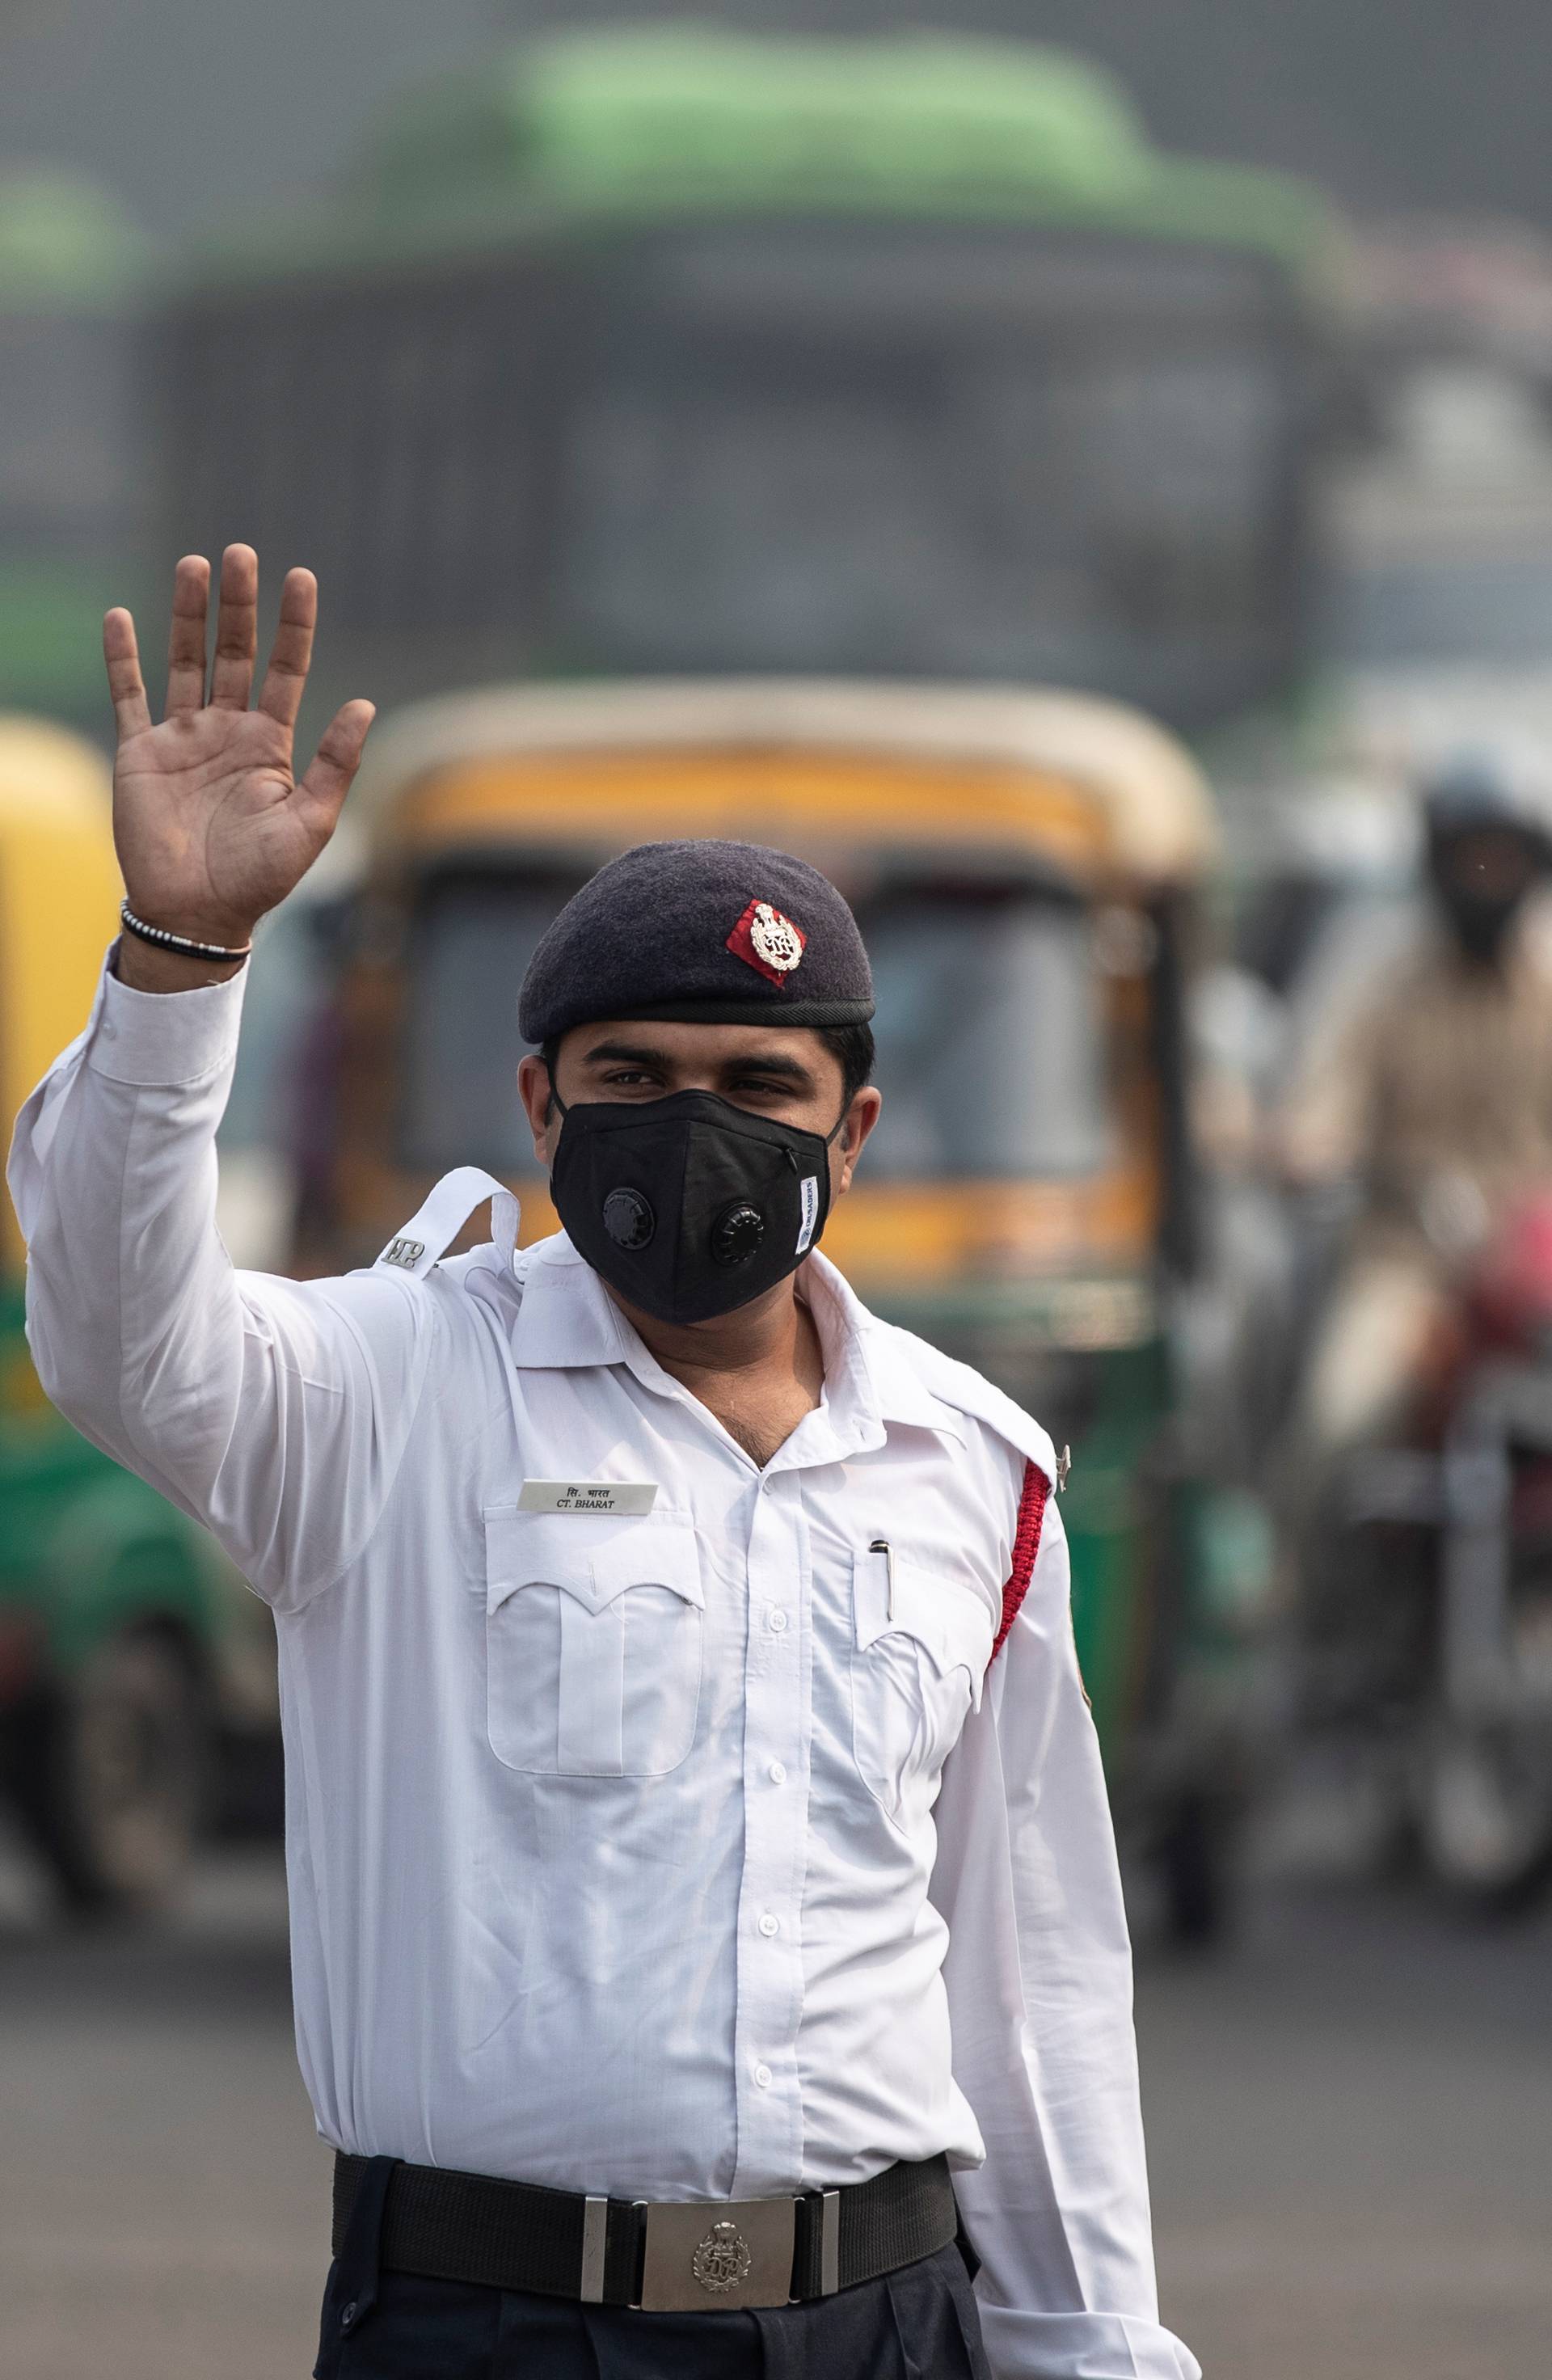 Toliko je zagađen zrak da New Delhi uvodi par-nepar vožnju